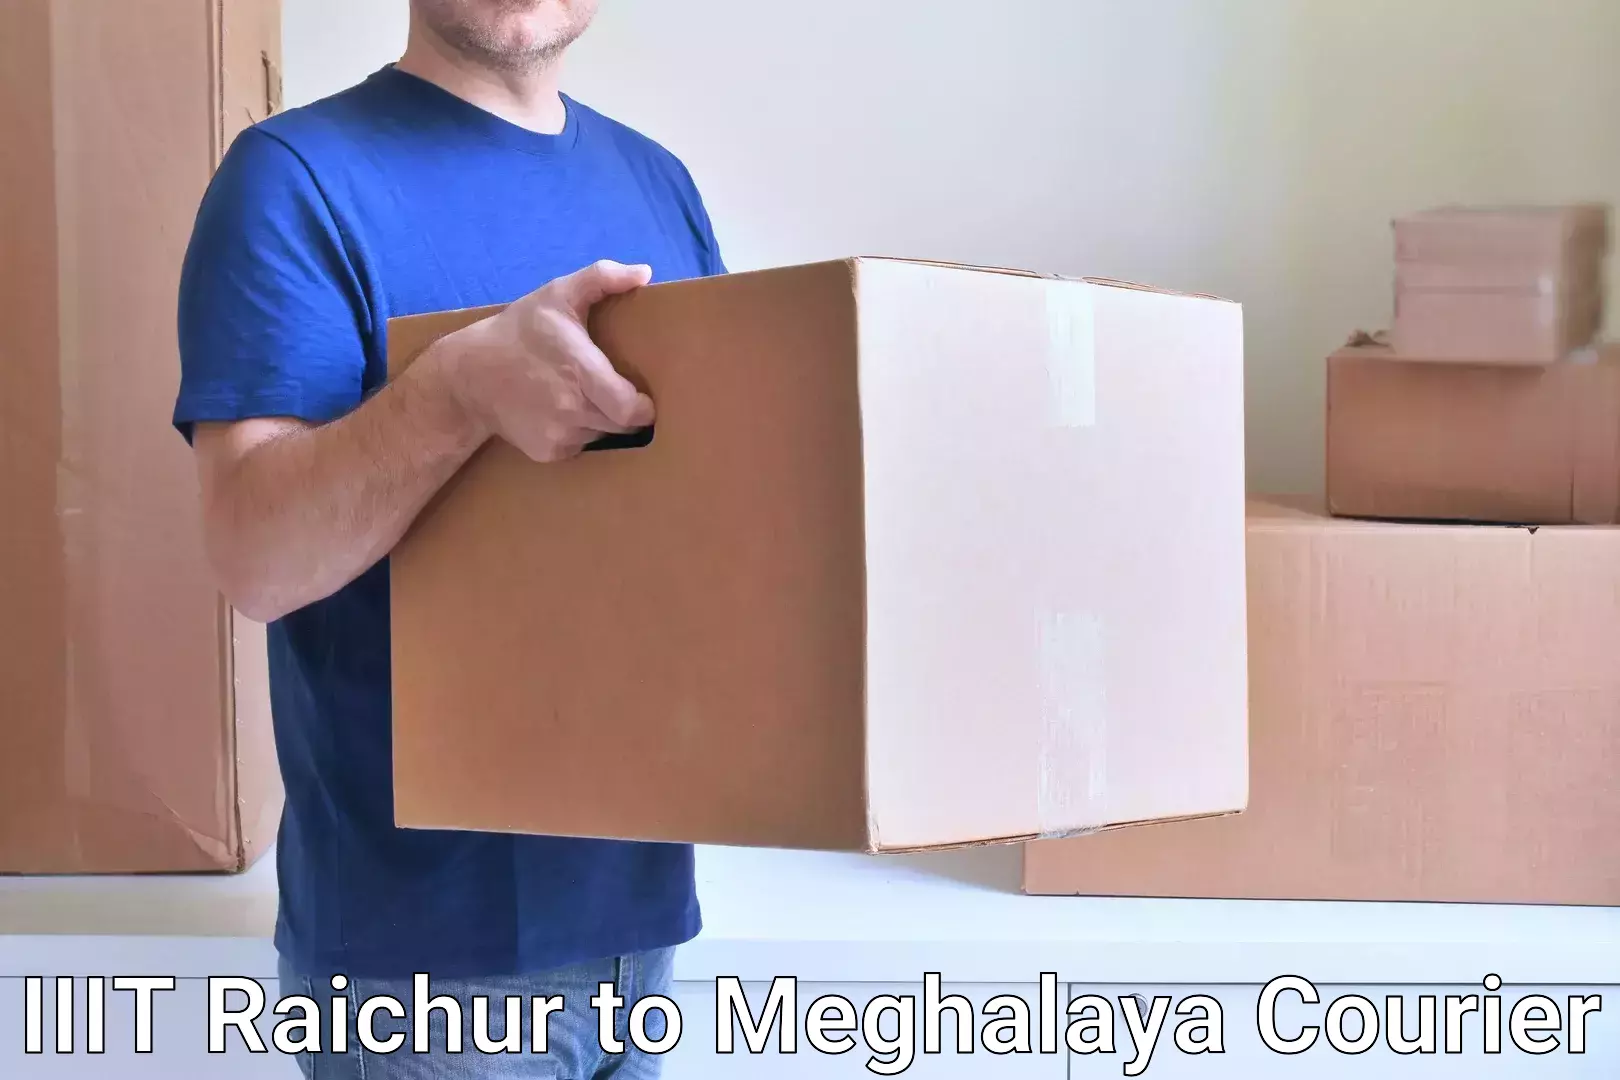 Next-generation courier services IIIT Raichur to West Khasi Hills